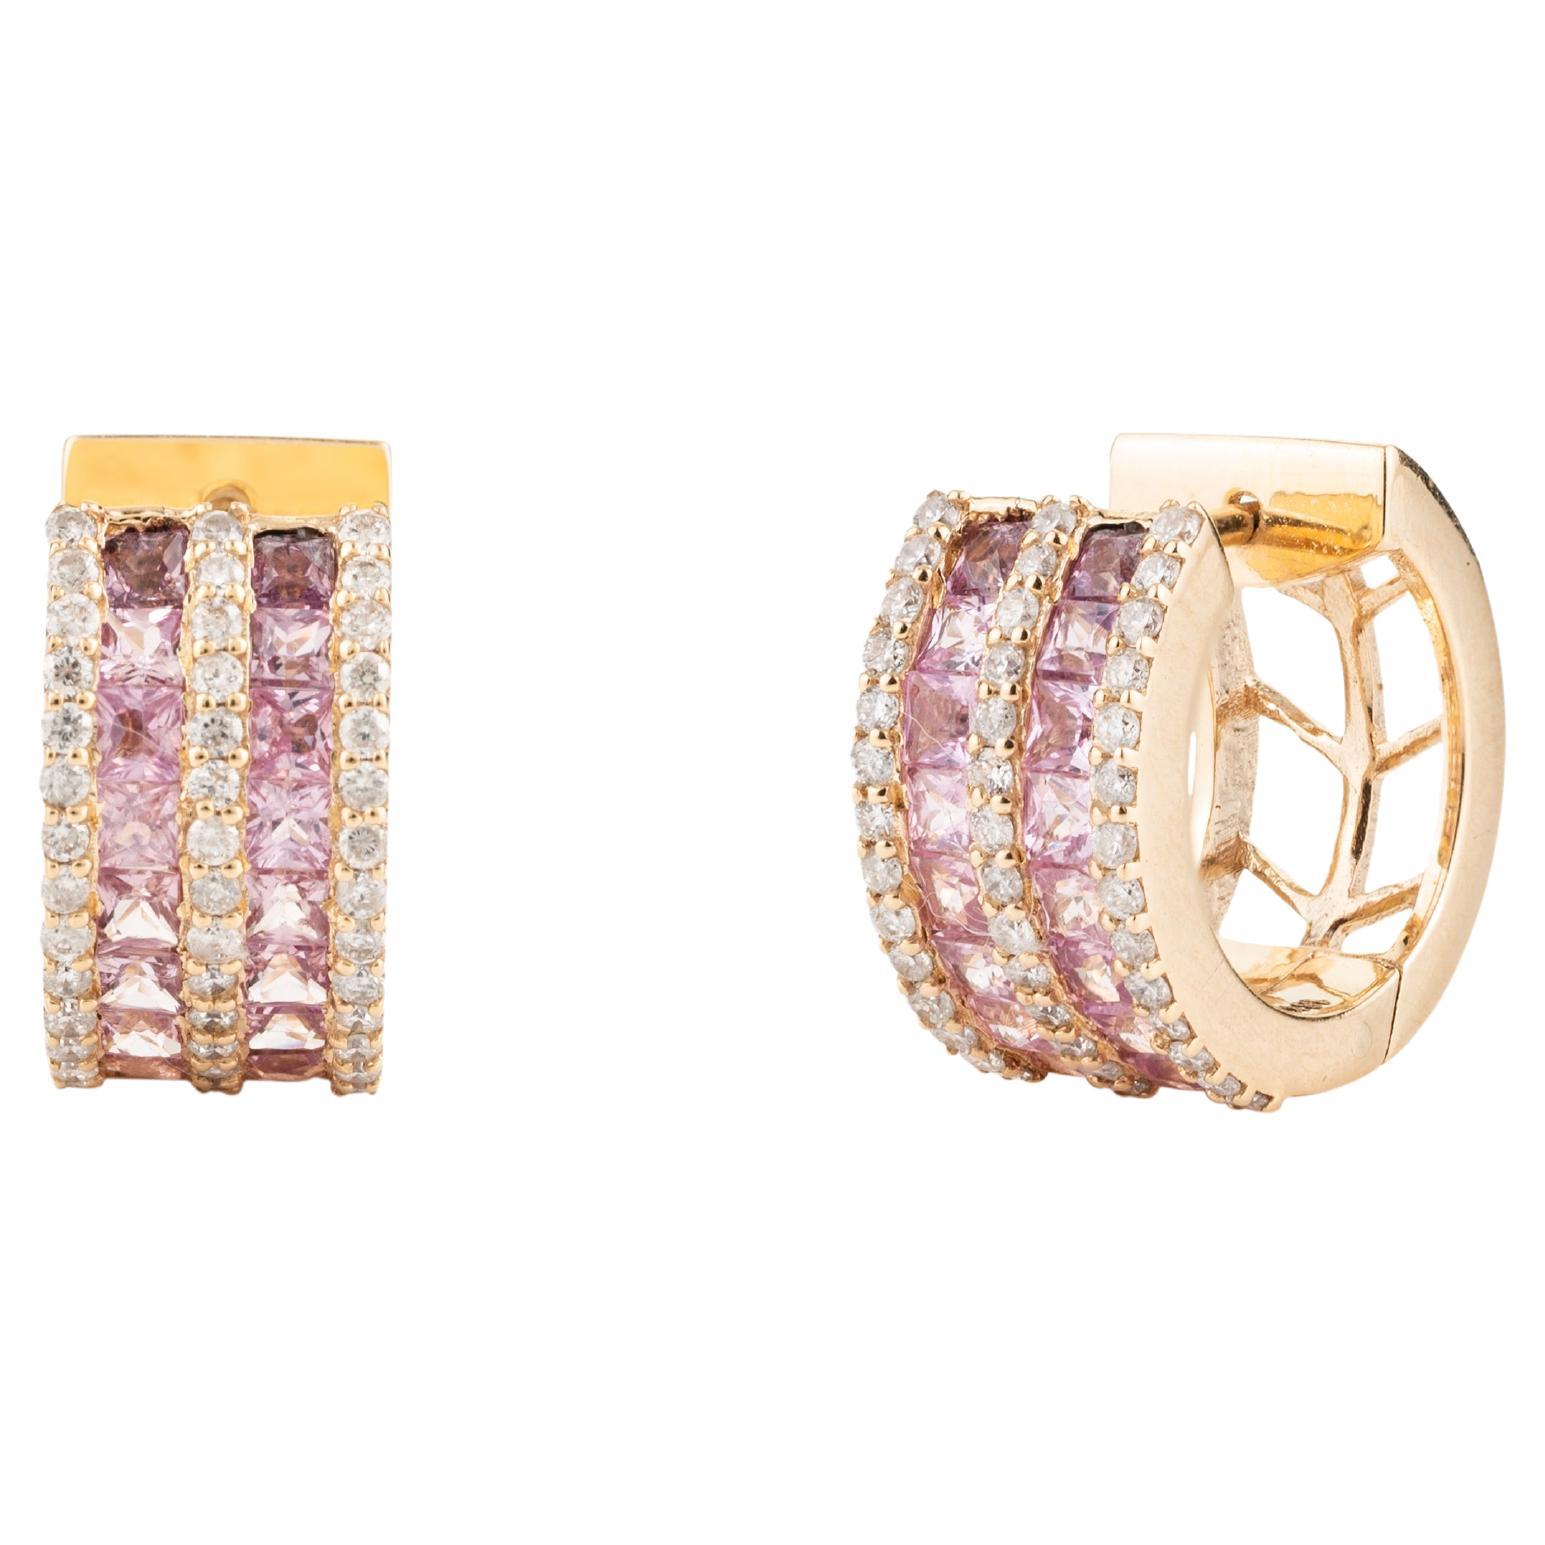 Rosa Saphir und Diamant Huggie Hoop Earring in 18K Gold, um ein Statement mit Ihrem Look zu setzen. Um mit Ihrem Look ein Statement zu setzen, brauchen Sie Reifohrringe. Diese Ohrringe mit quadratisch geschliffenen rosafarbenen Saphiren und rund